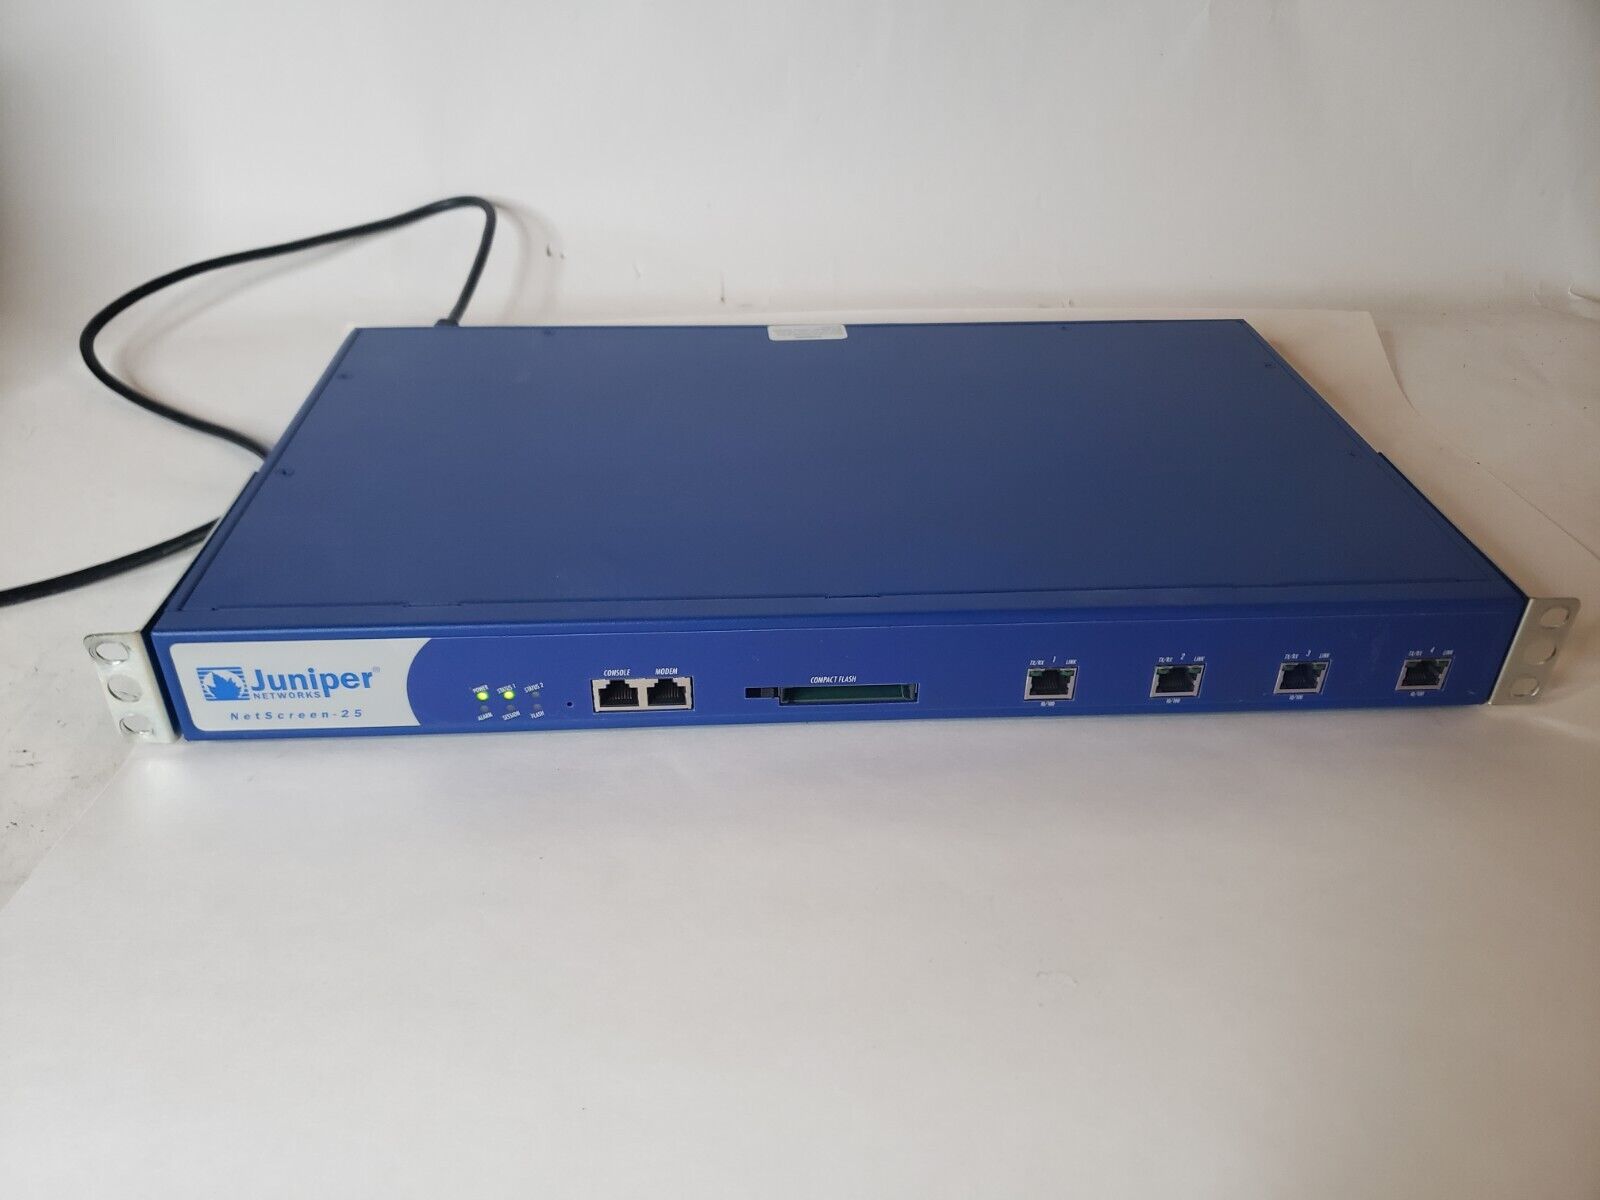 Juniper NS-025B-001 Netscreen-25 VPN Firewall v4.0